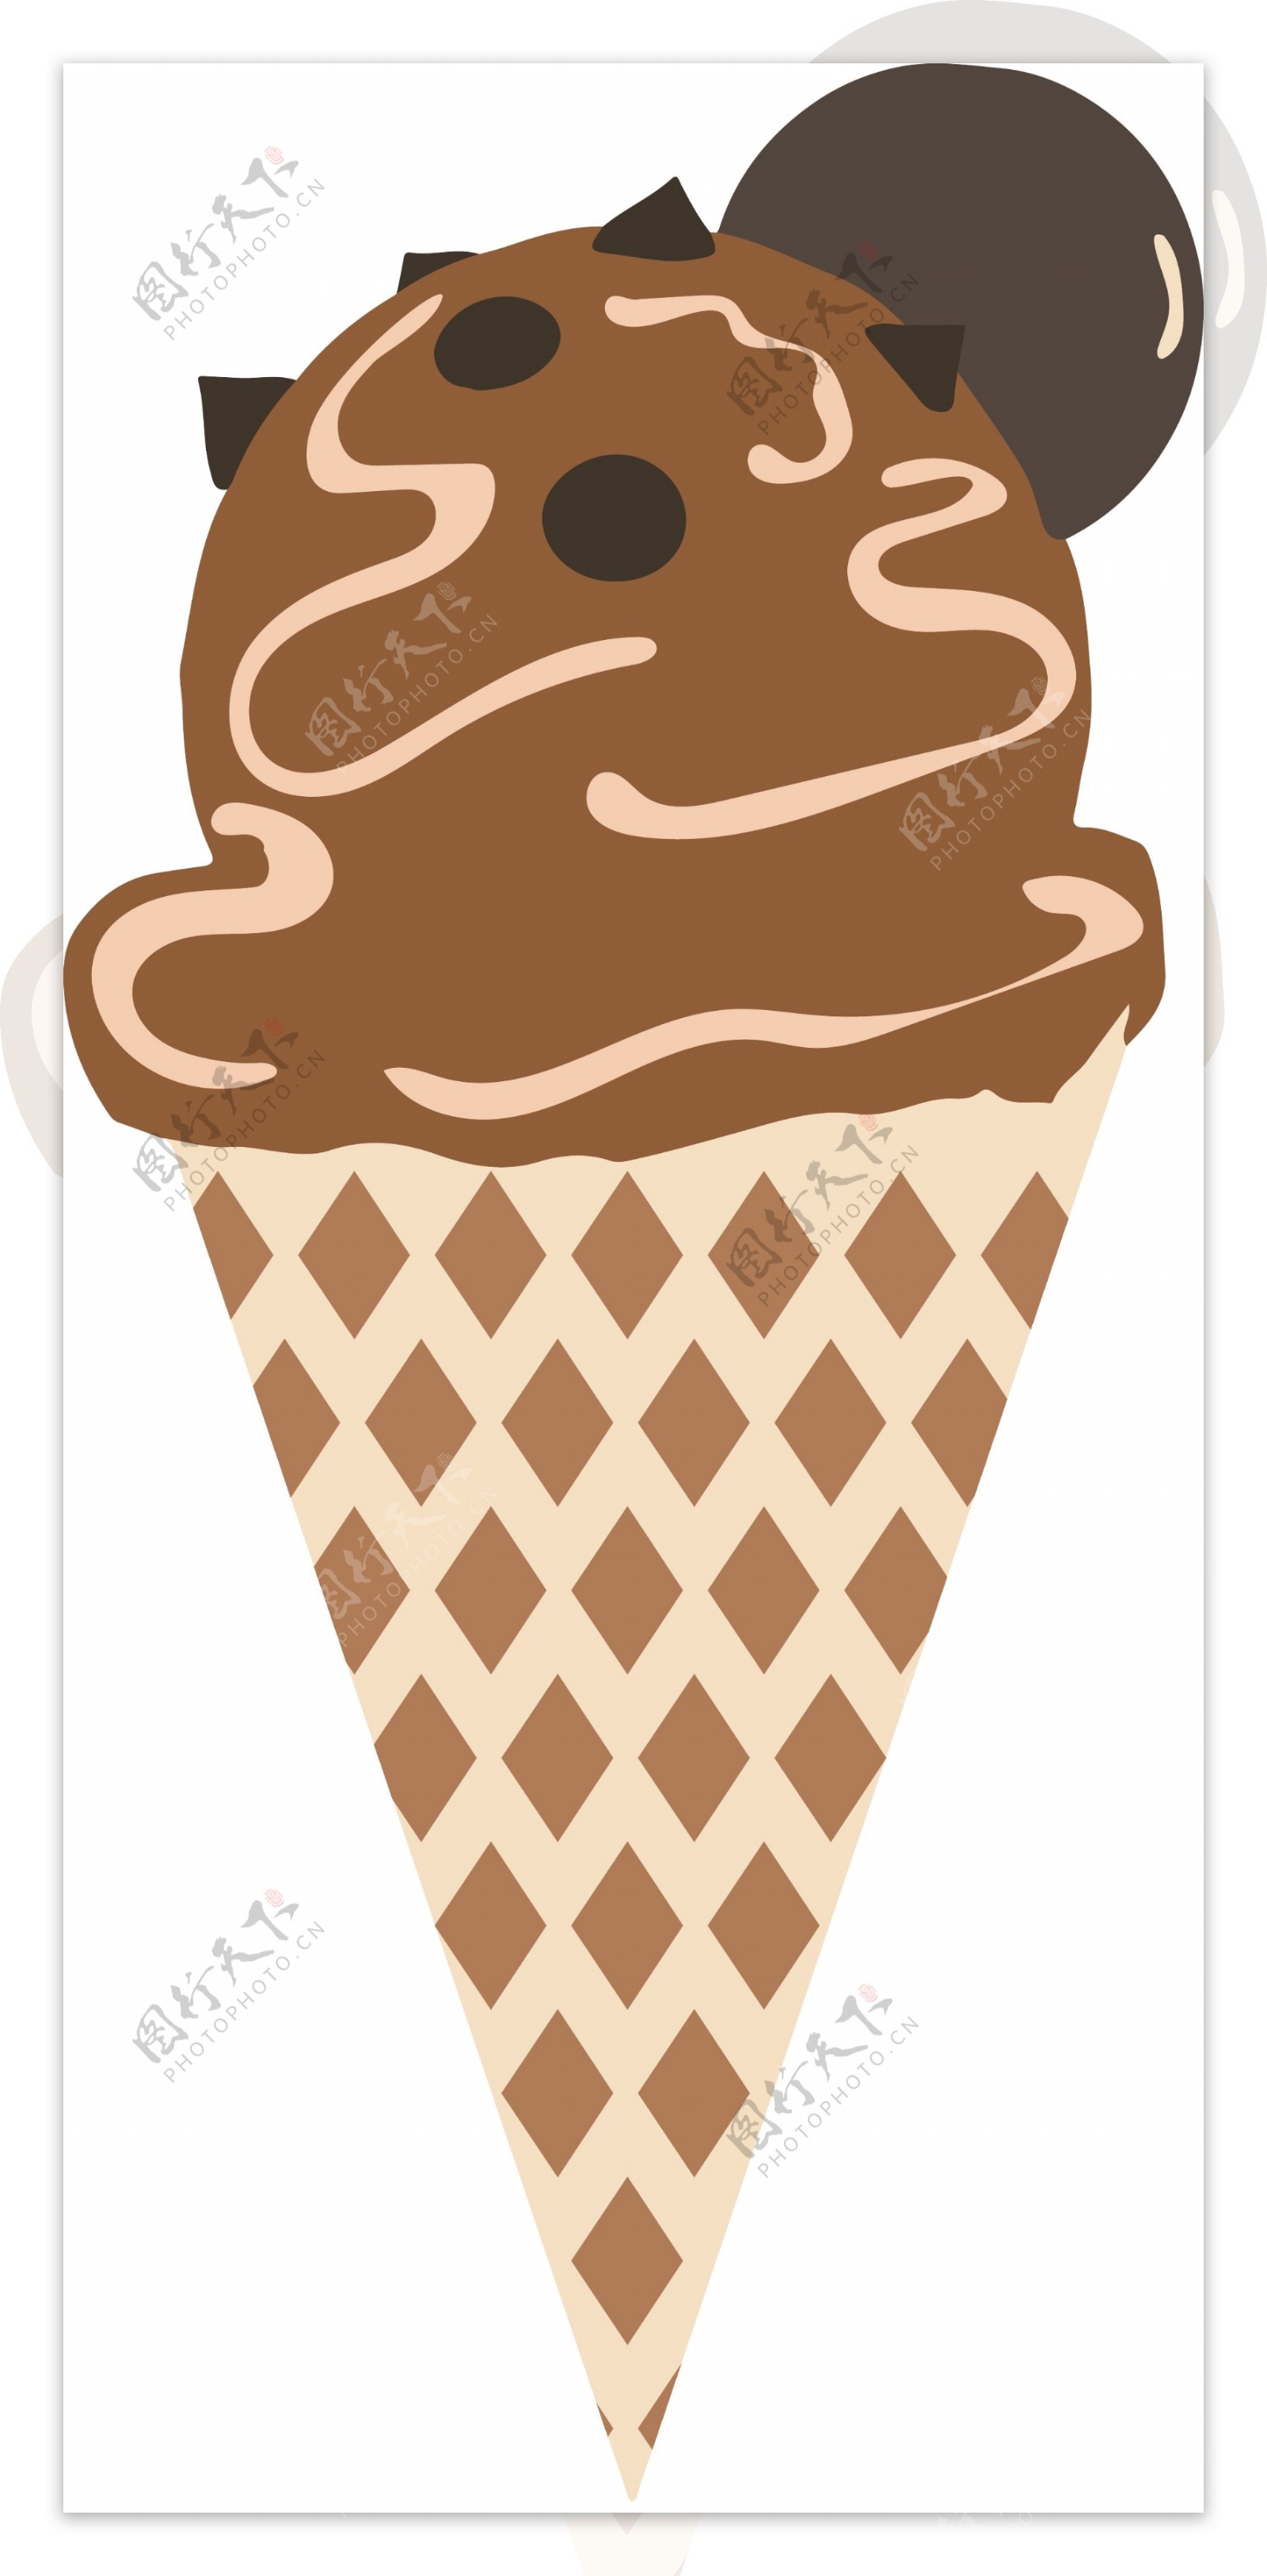 夏日卡通冰淇淋图形可商用元素